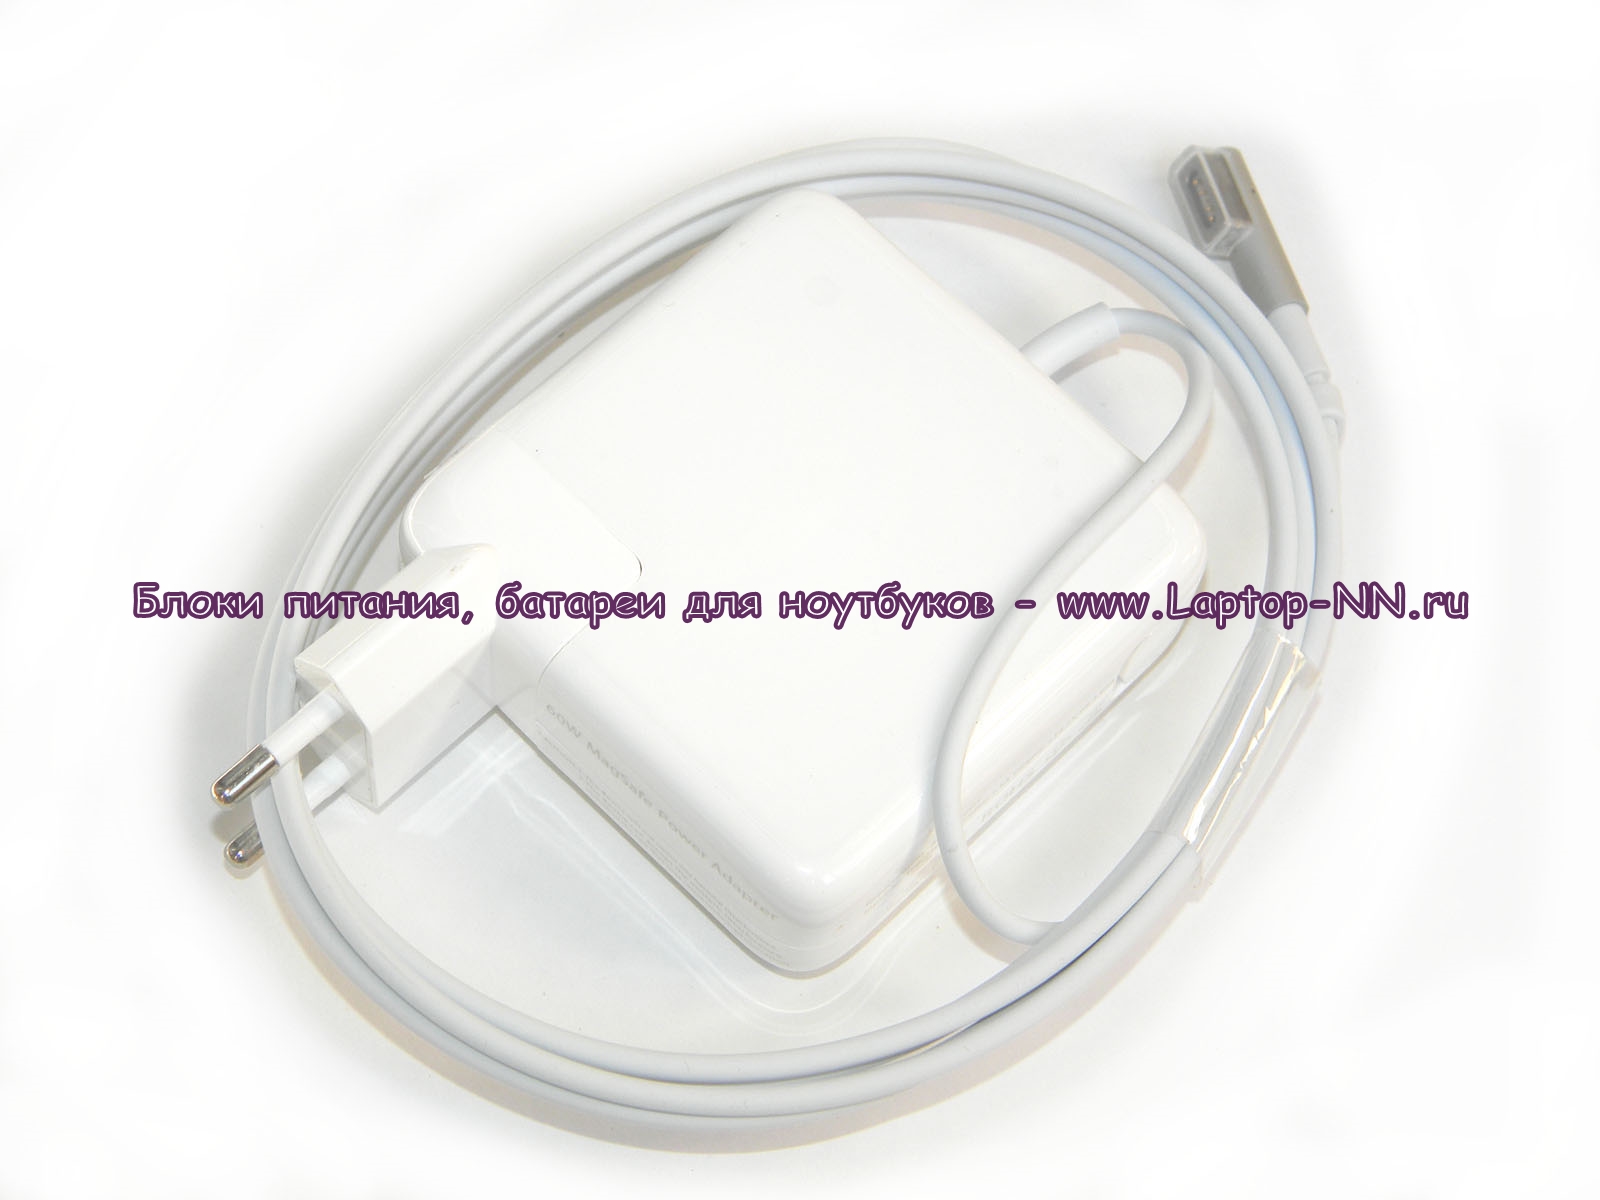 Купить блок питания для ноутбука Apple MacBook Magsafe1 85W в Нижнем Новгороде